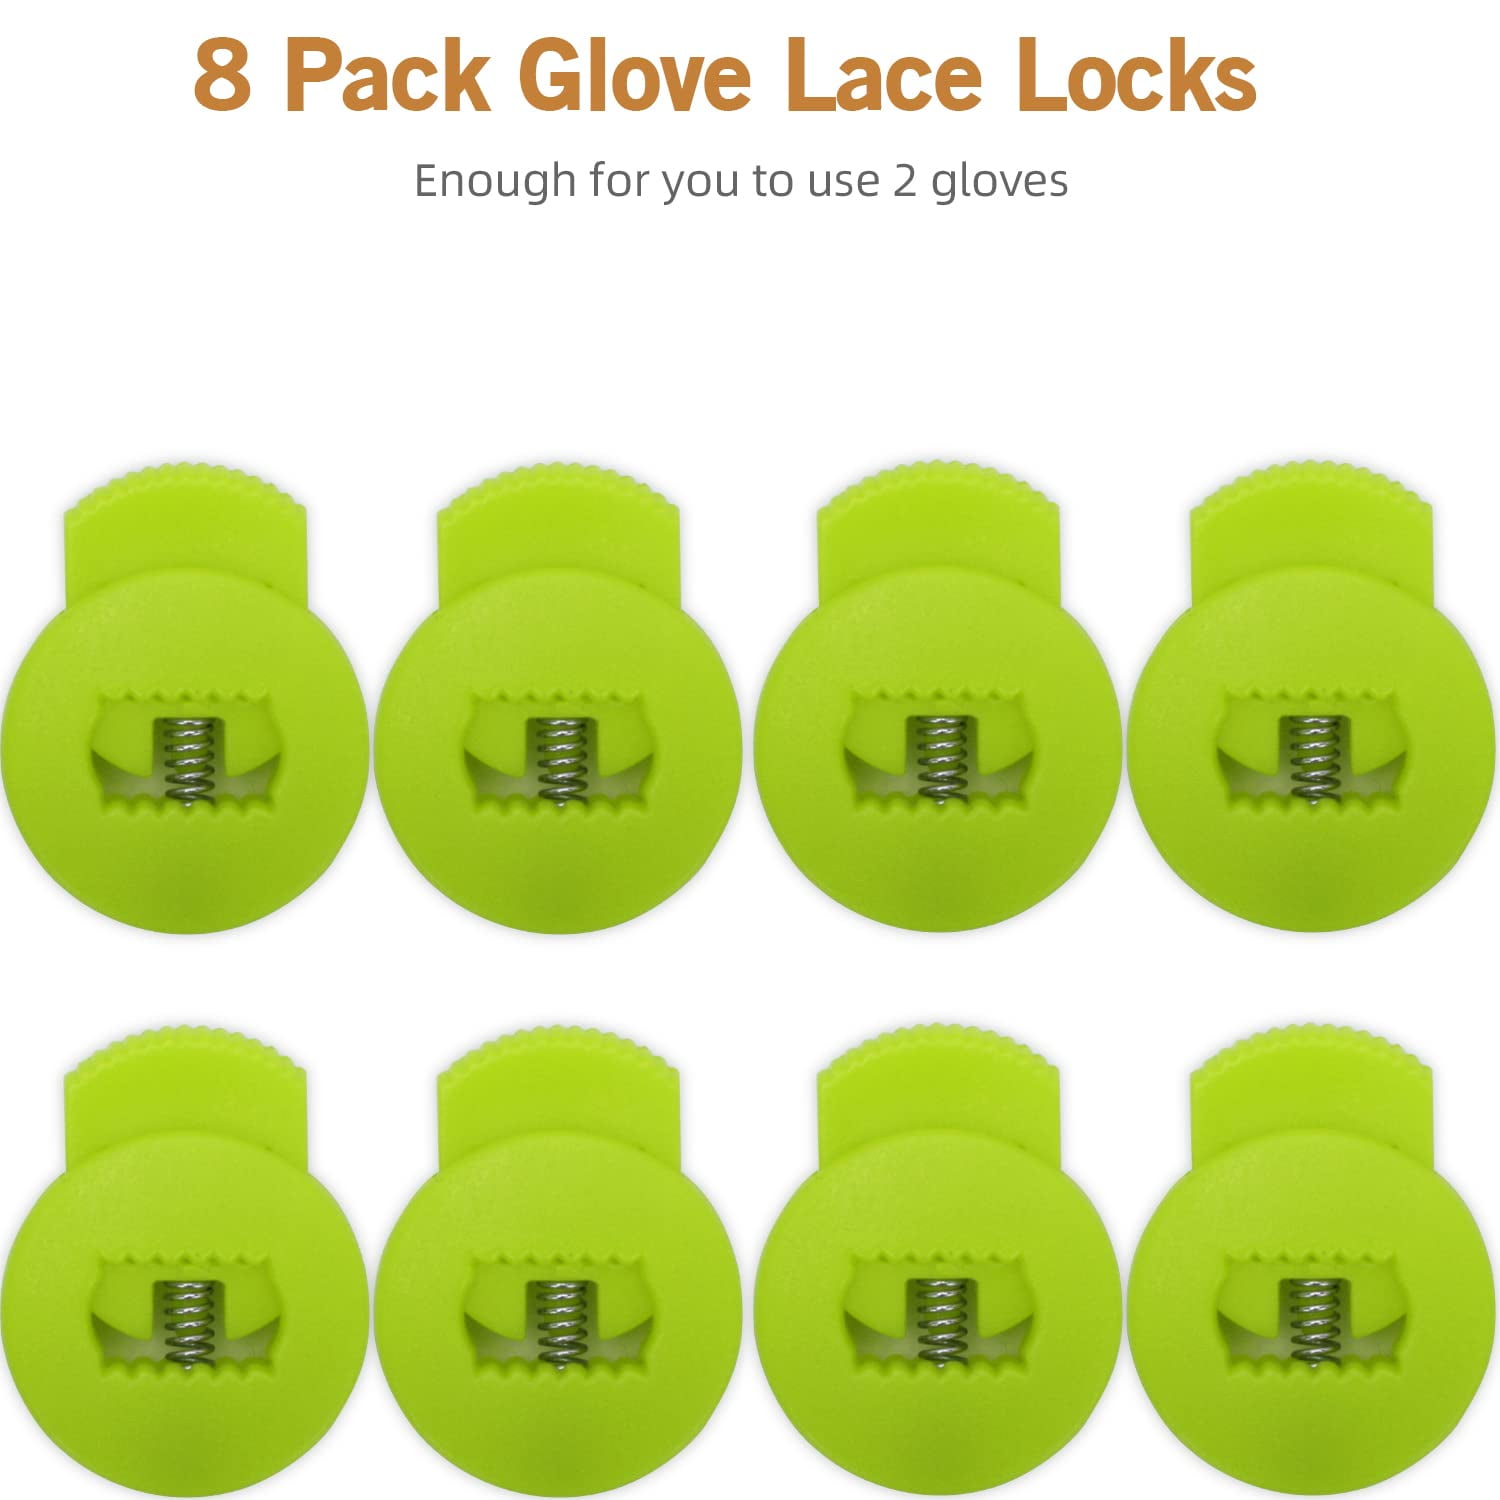 8 Pack Glove Baseball Lock Softball Black Lace Locker Used to replace lace  Baseb